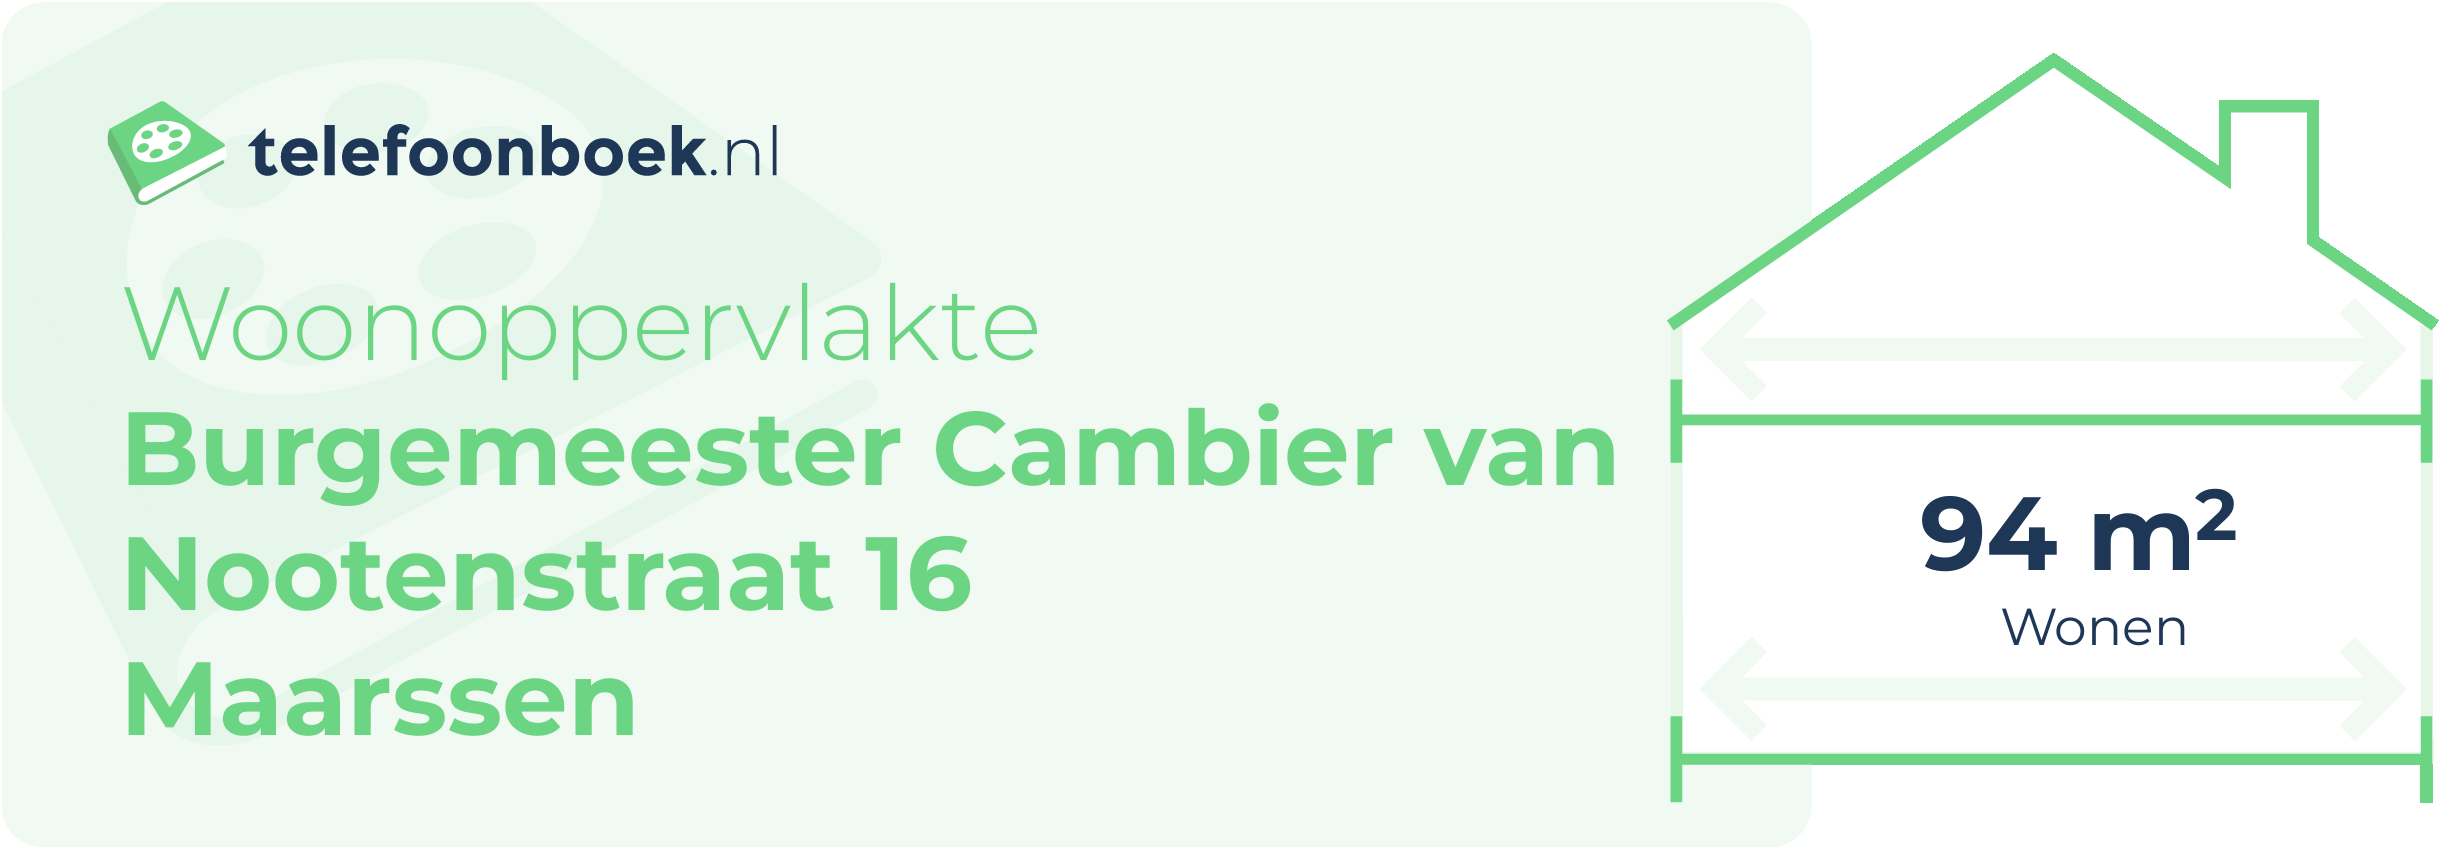 Woonoppervlakte Burgemeester Cambier Van Nootenstraat 16 Maarssen